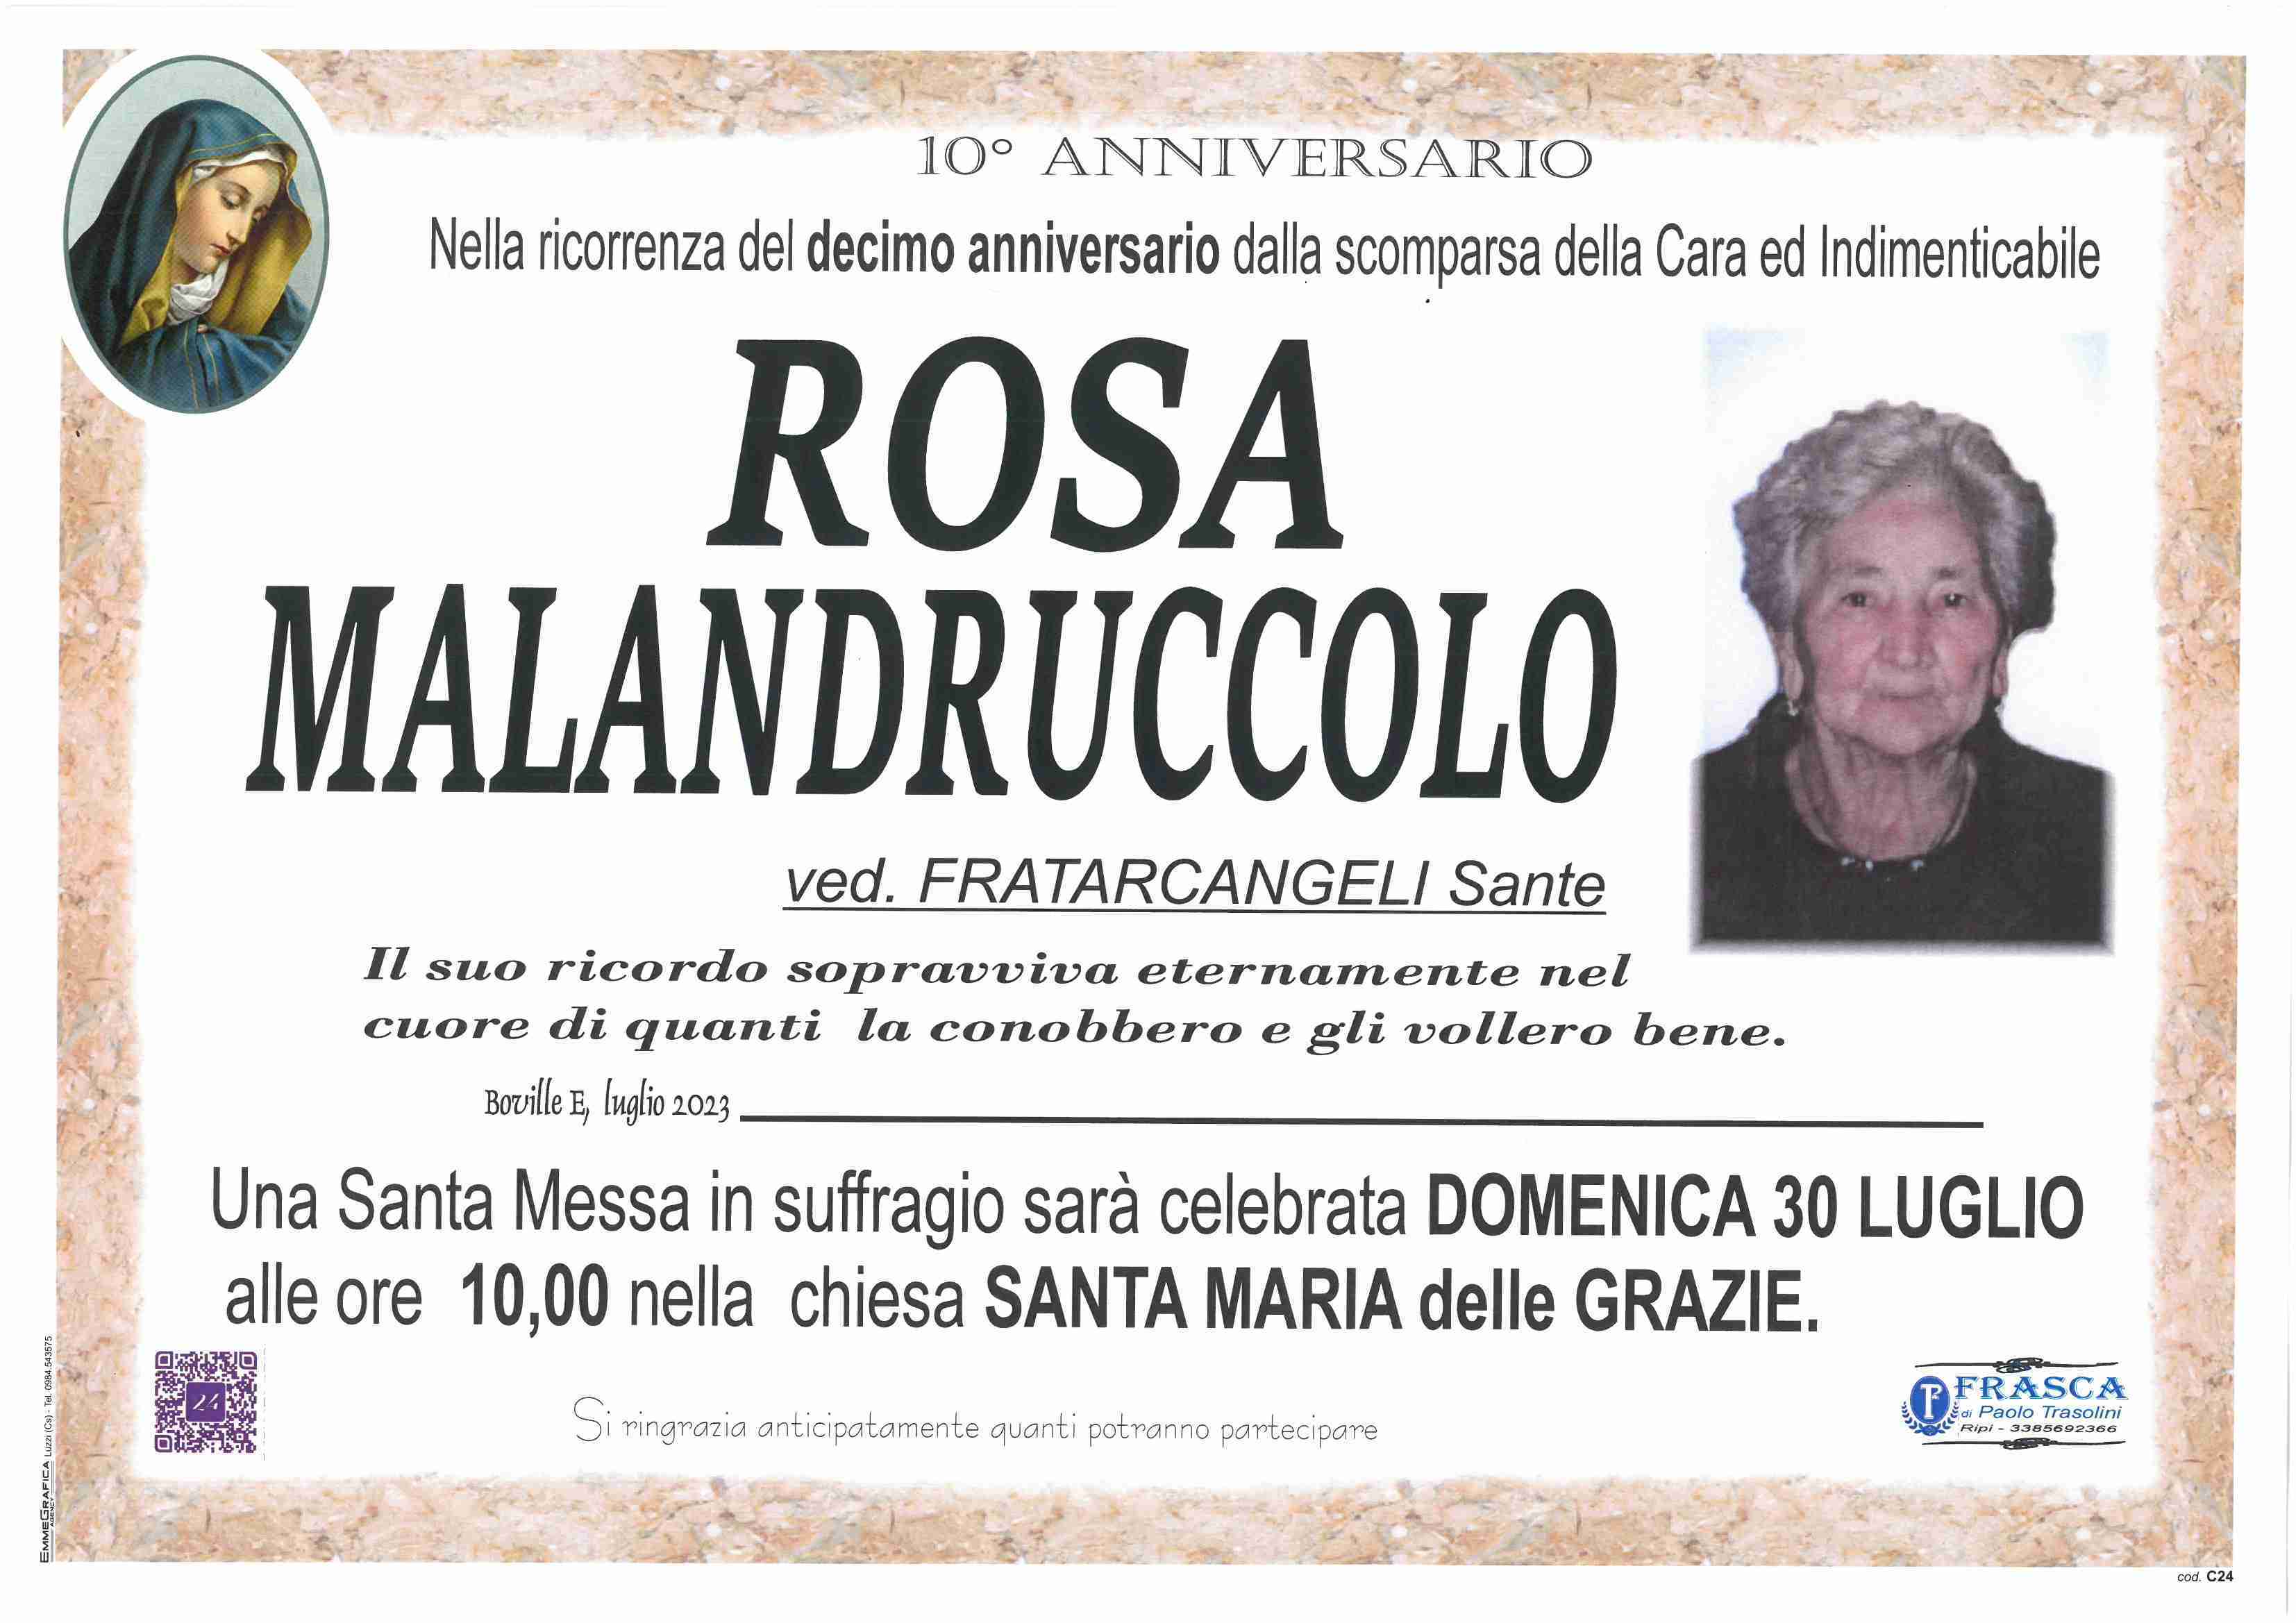 Rosa Malandruccolo